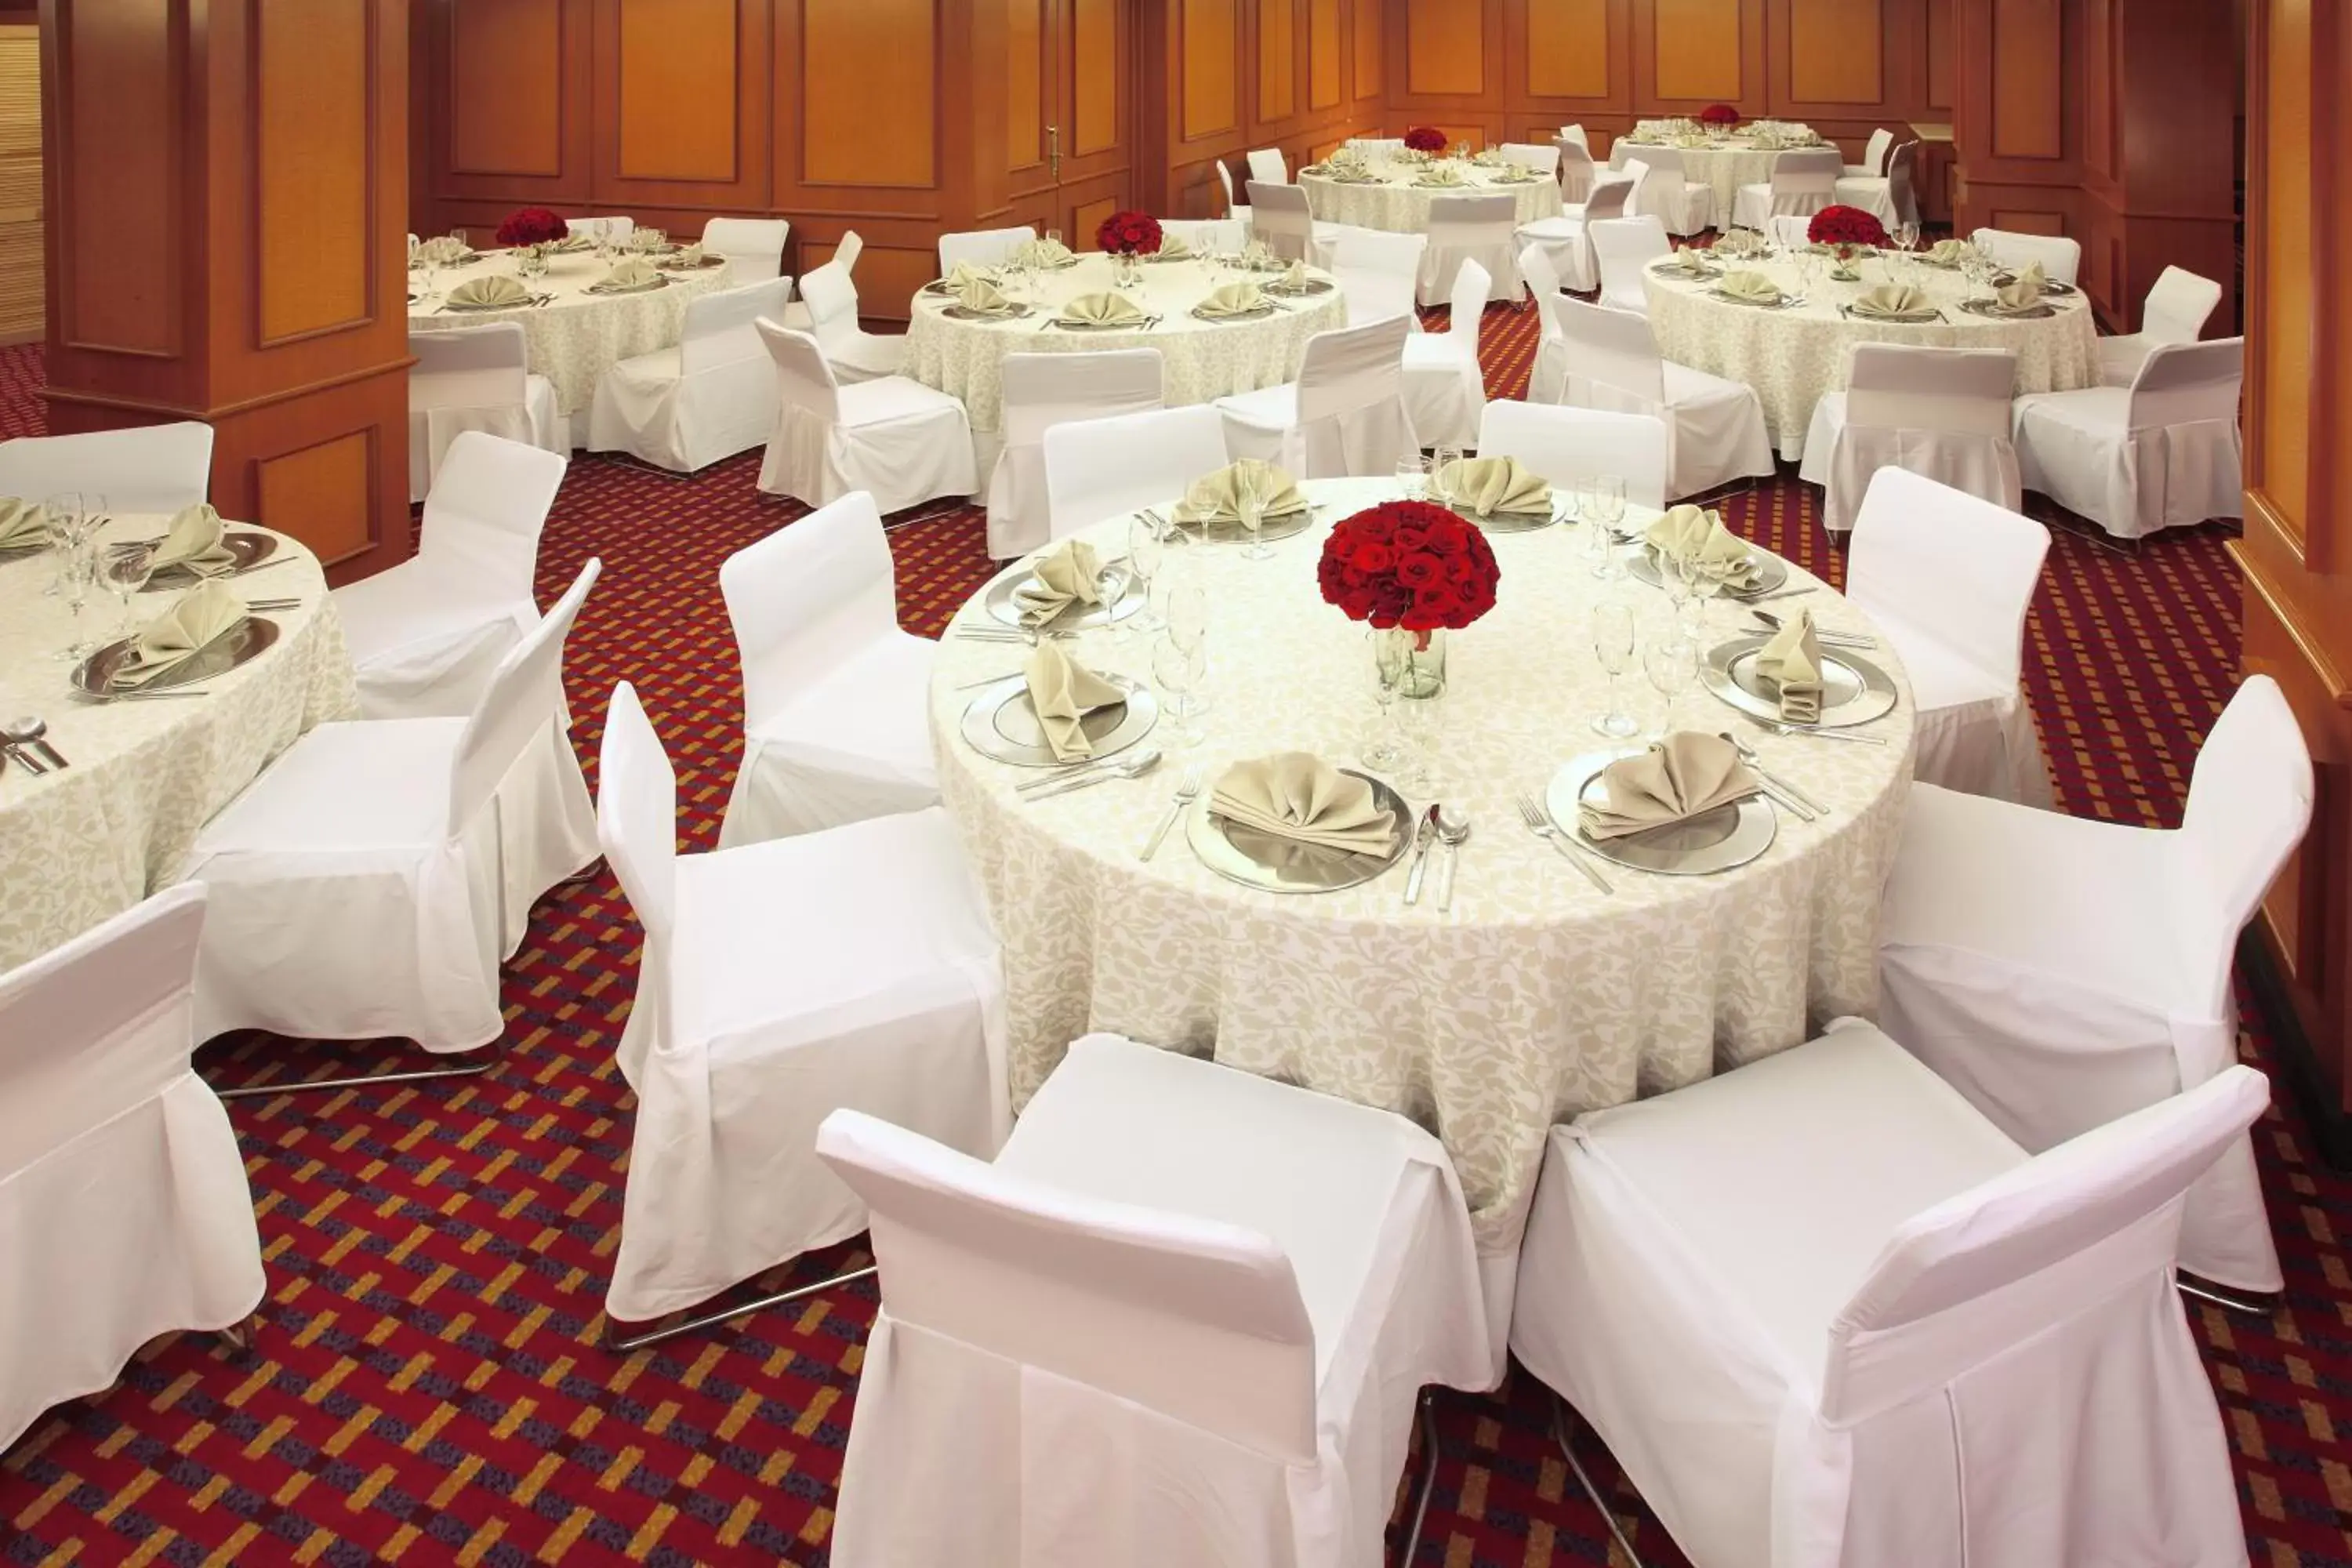 Banquet/Function facilities, Banquet Facilities in Emporio Reforma